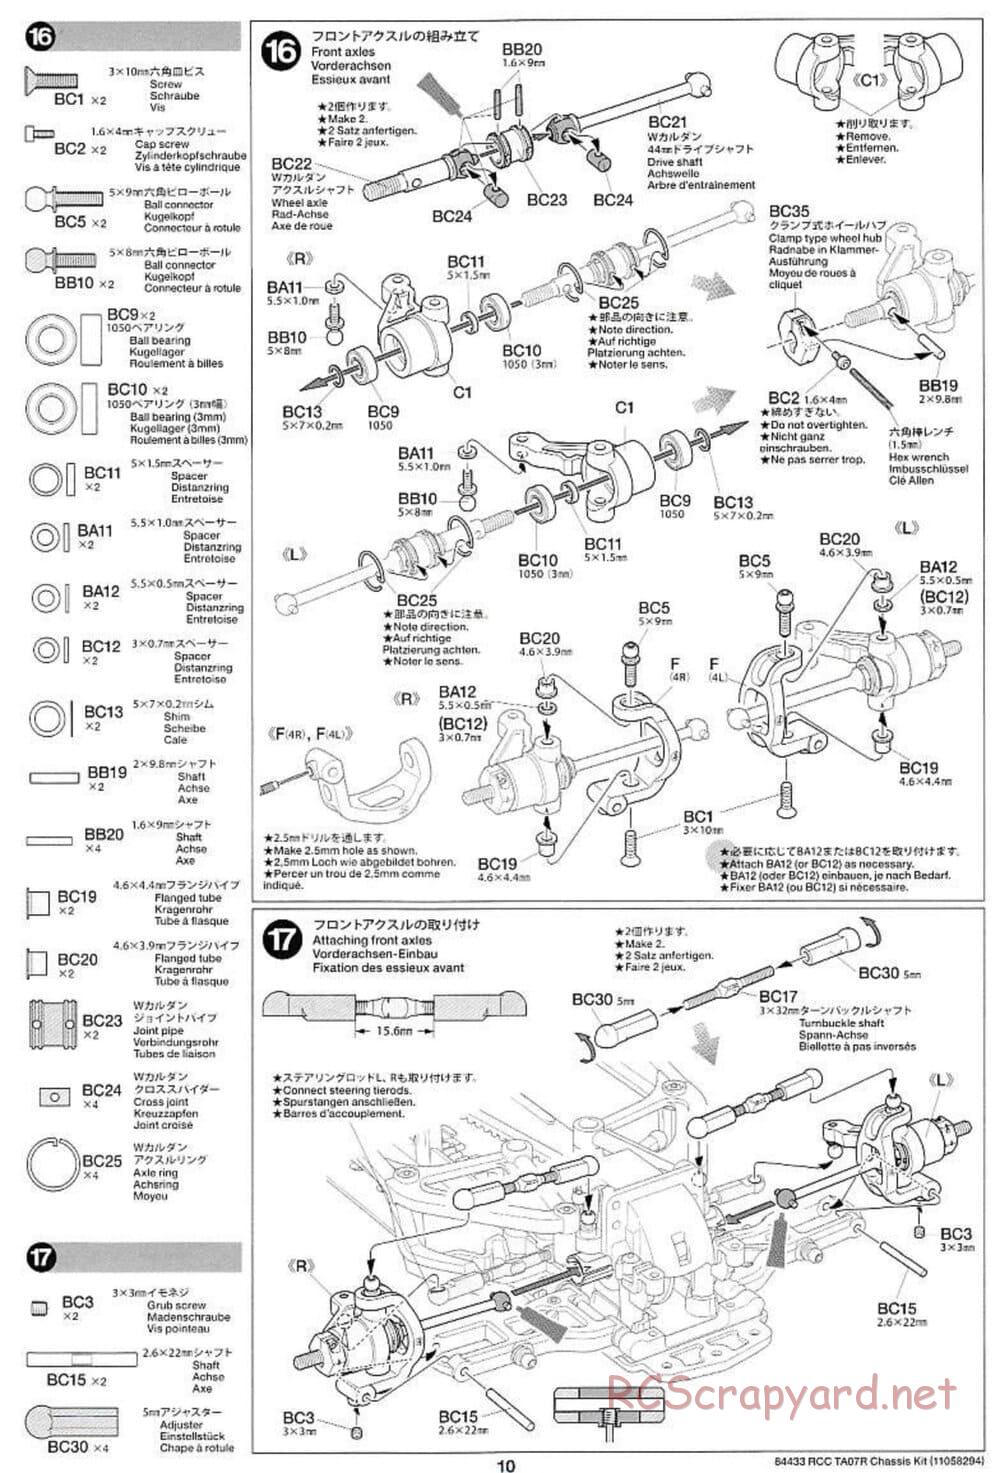 Tamiya - TA07 R Chassis - Manual - Page 10